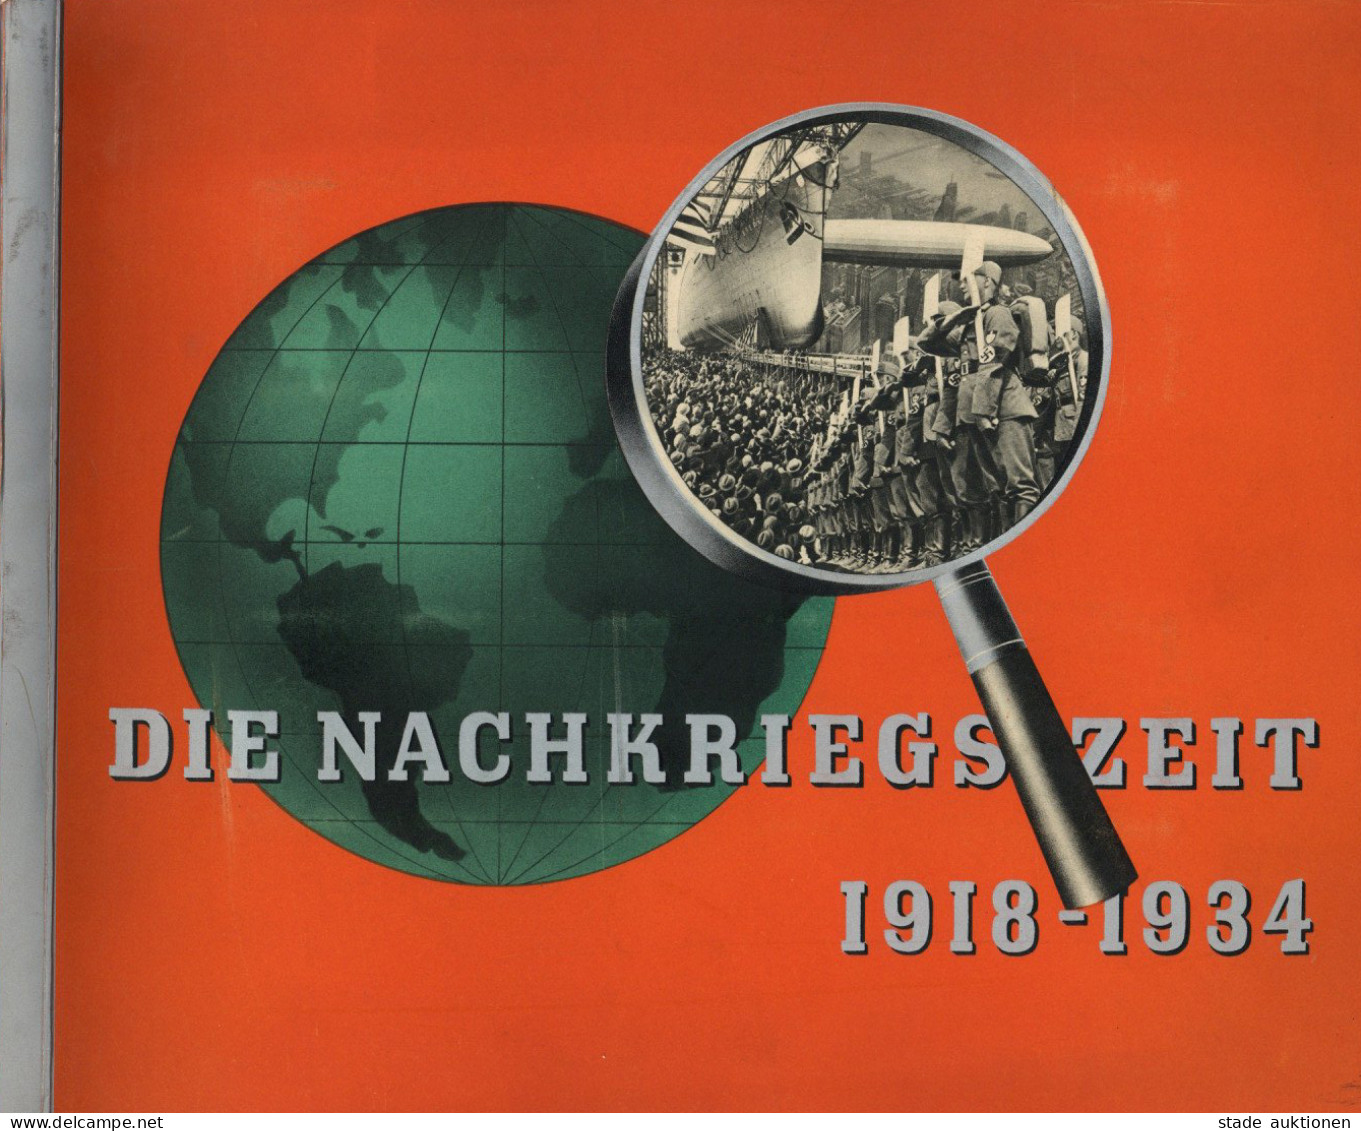 Sammelbild-Album Die Nachkriegszeit 1918-1934 Hrsg. Von Eckstein-Halpaus Waldorf-Astoria U. Haus Neuerburg Komplett 252  - War 1939-45